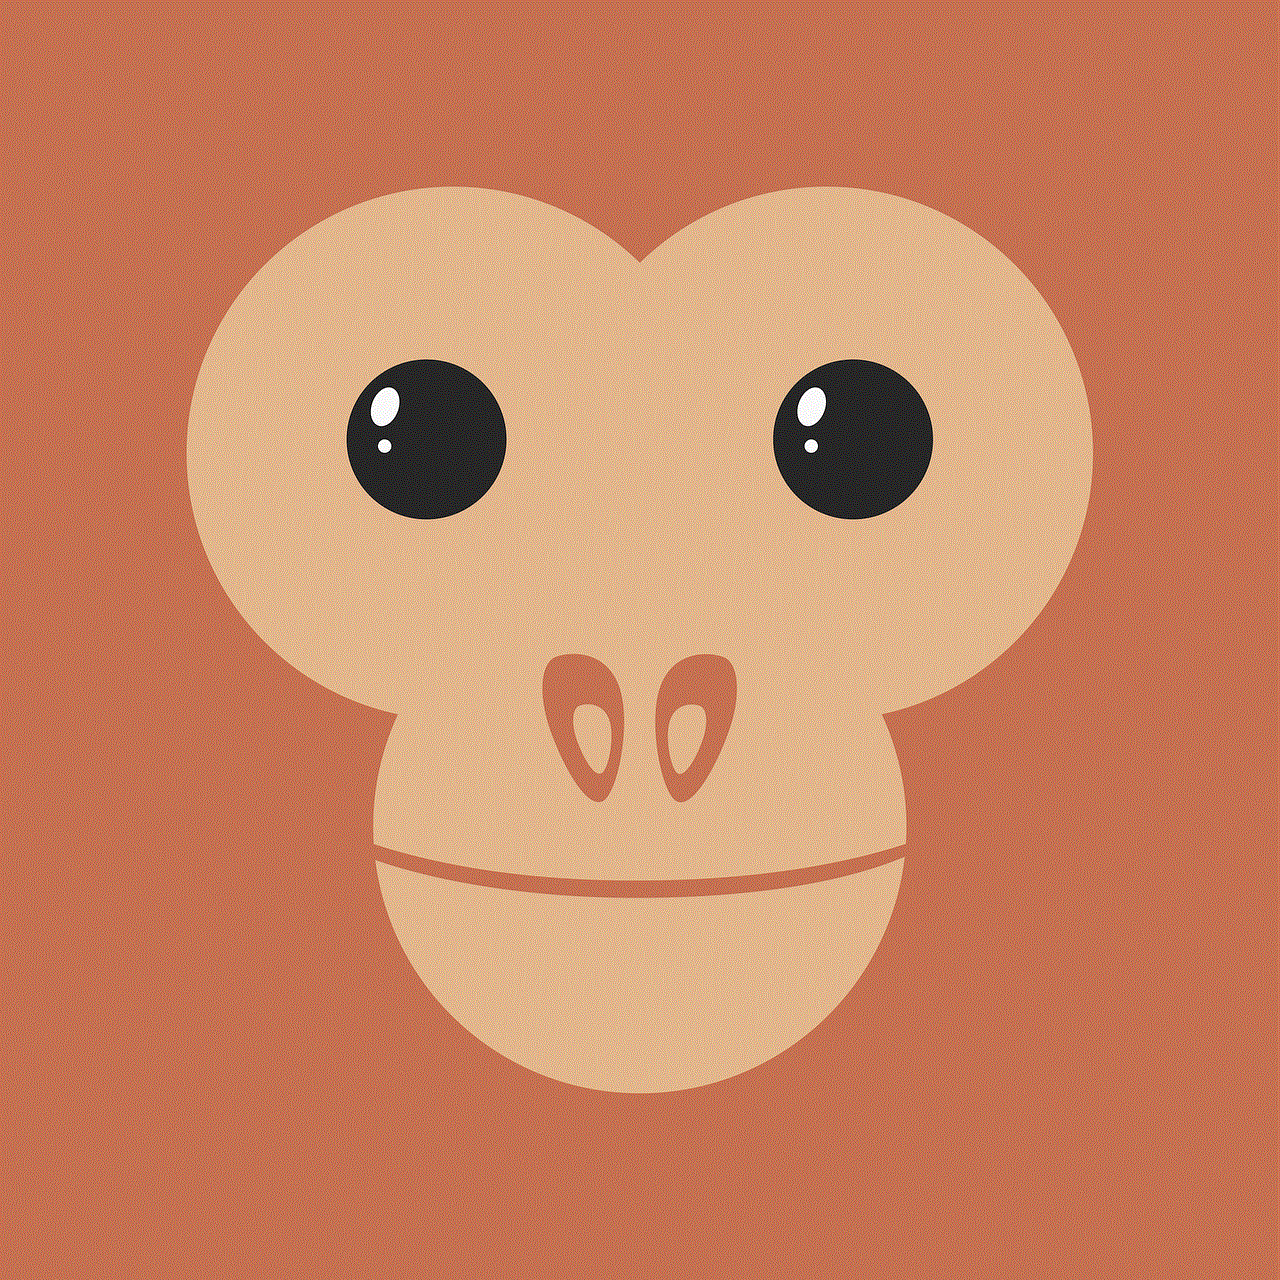 Monkey Primate